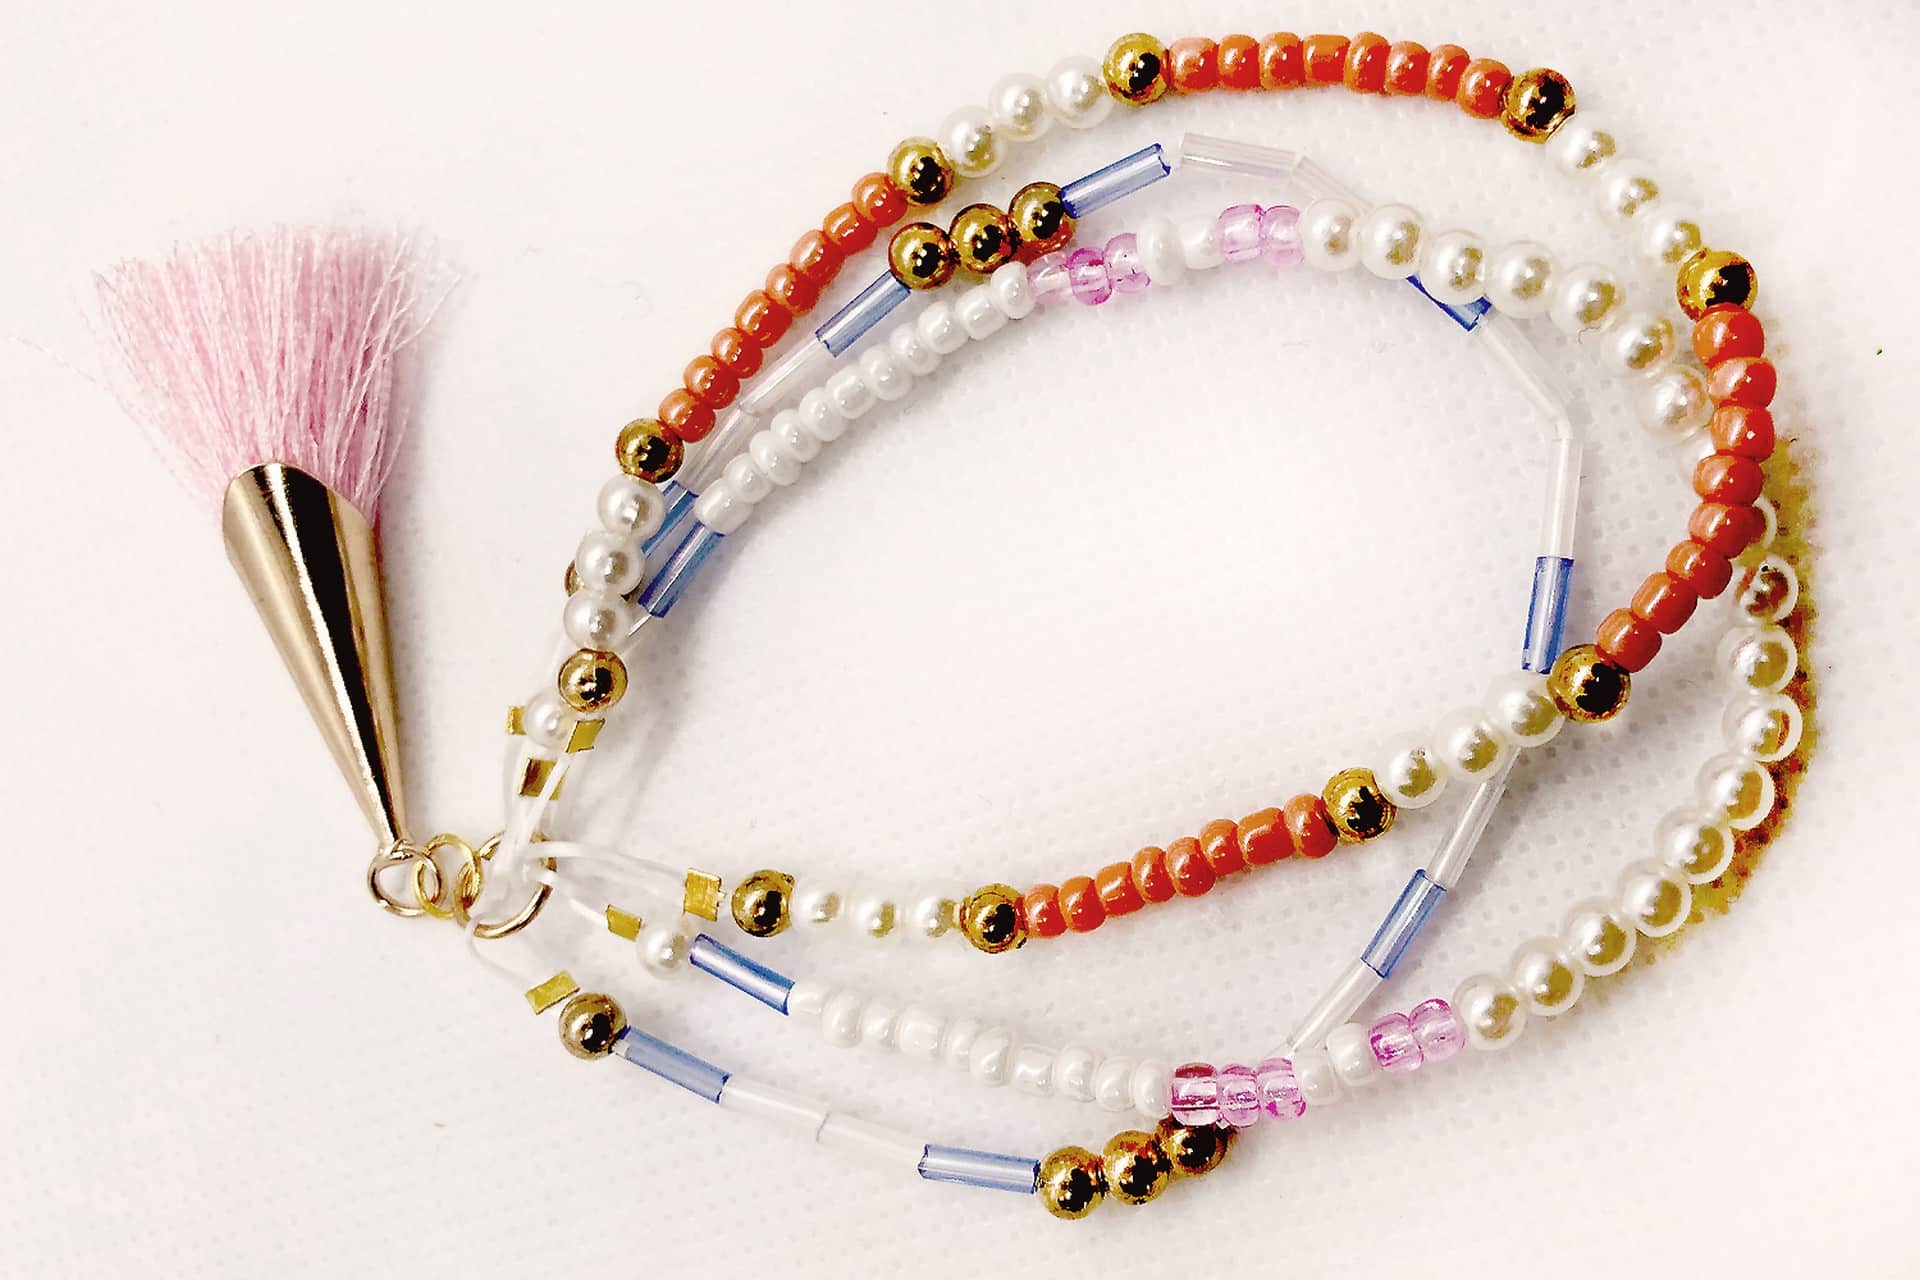 Bijoux en perles de rocaille avec des motifs floraux délicats, créant une esthétique romantique et intemporelle